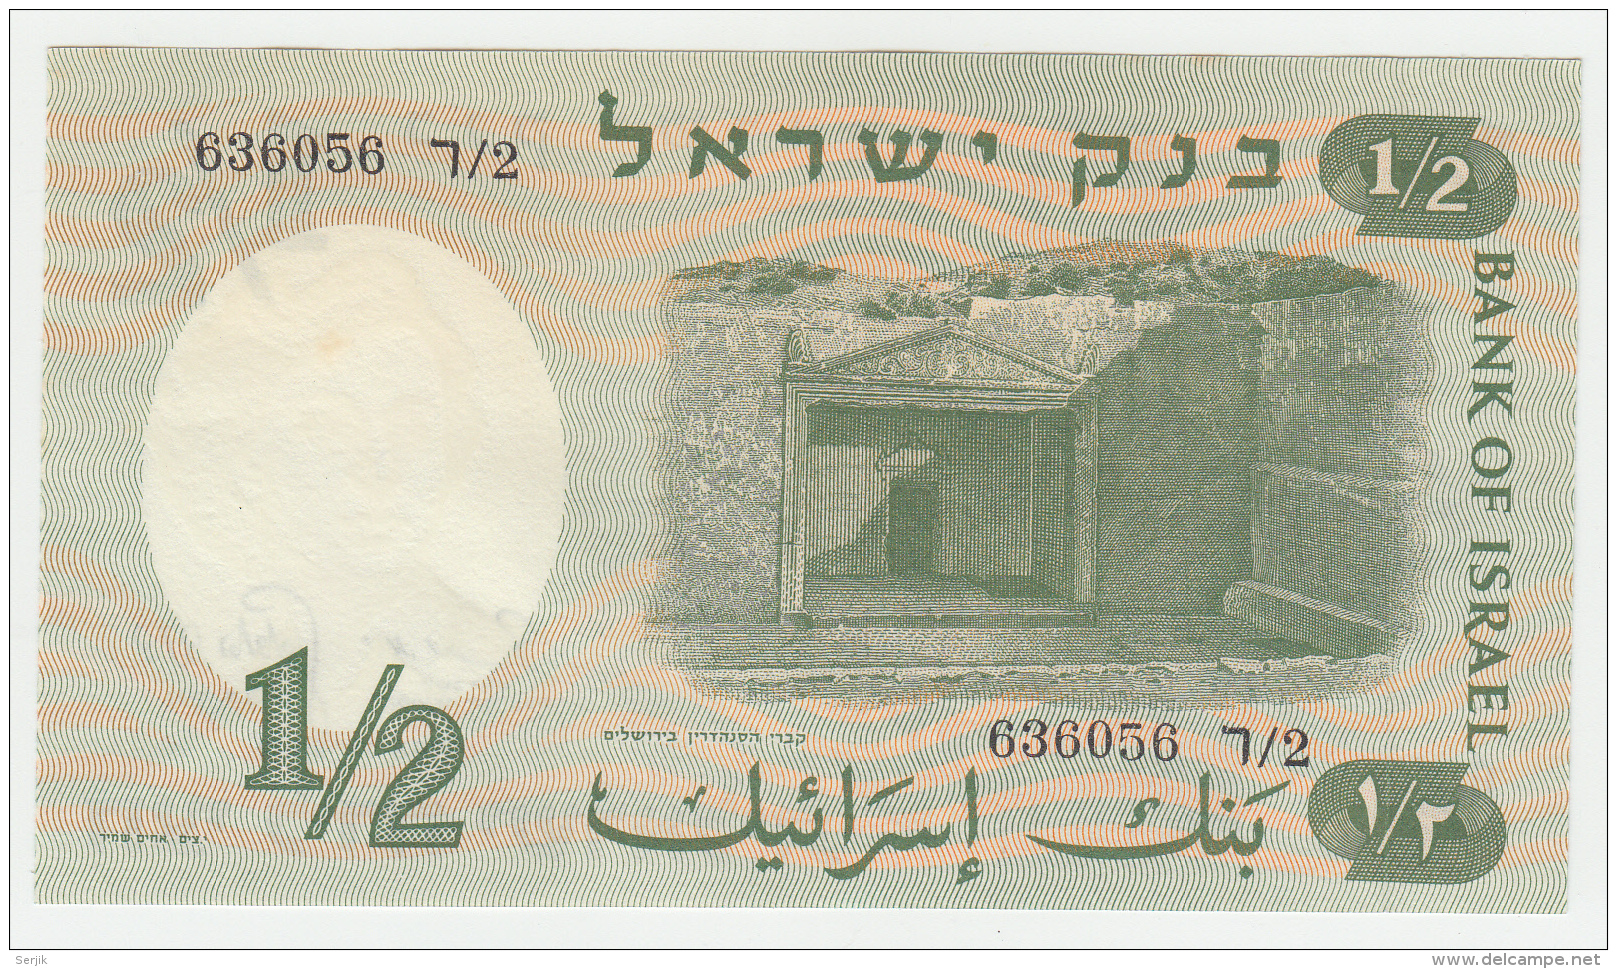 ISRAEL 1/2 LIRA 1958 UNC NEUF Pick 29 - Israele